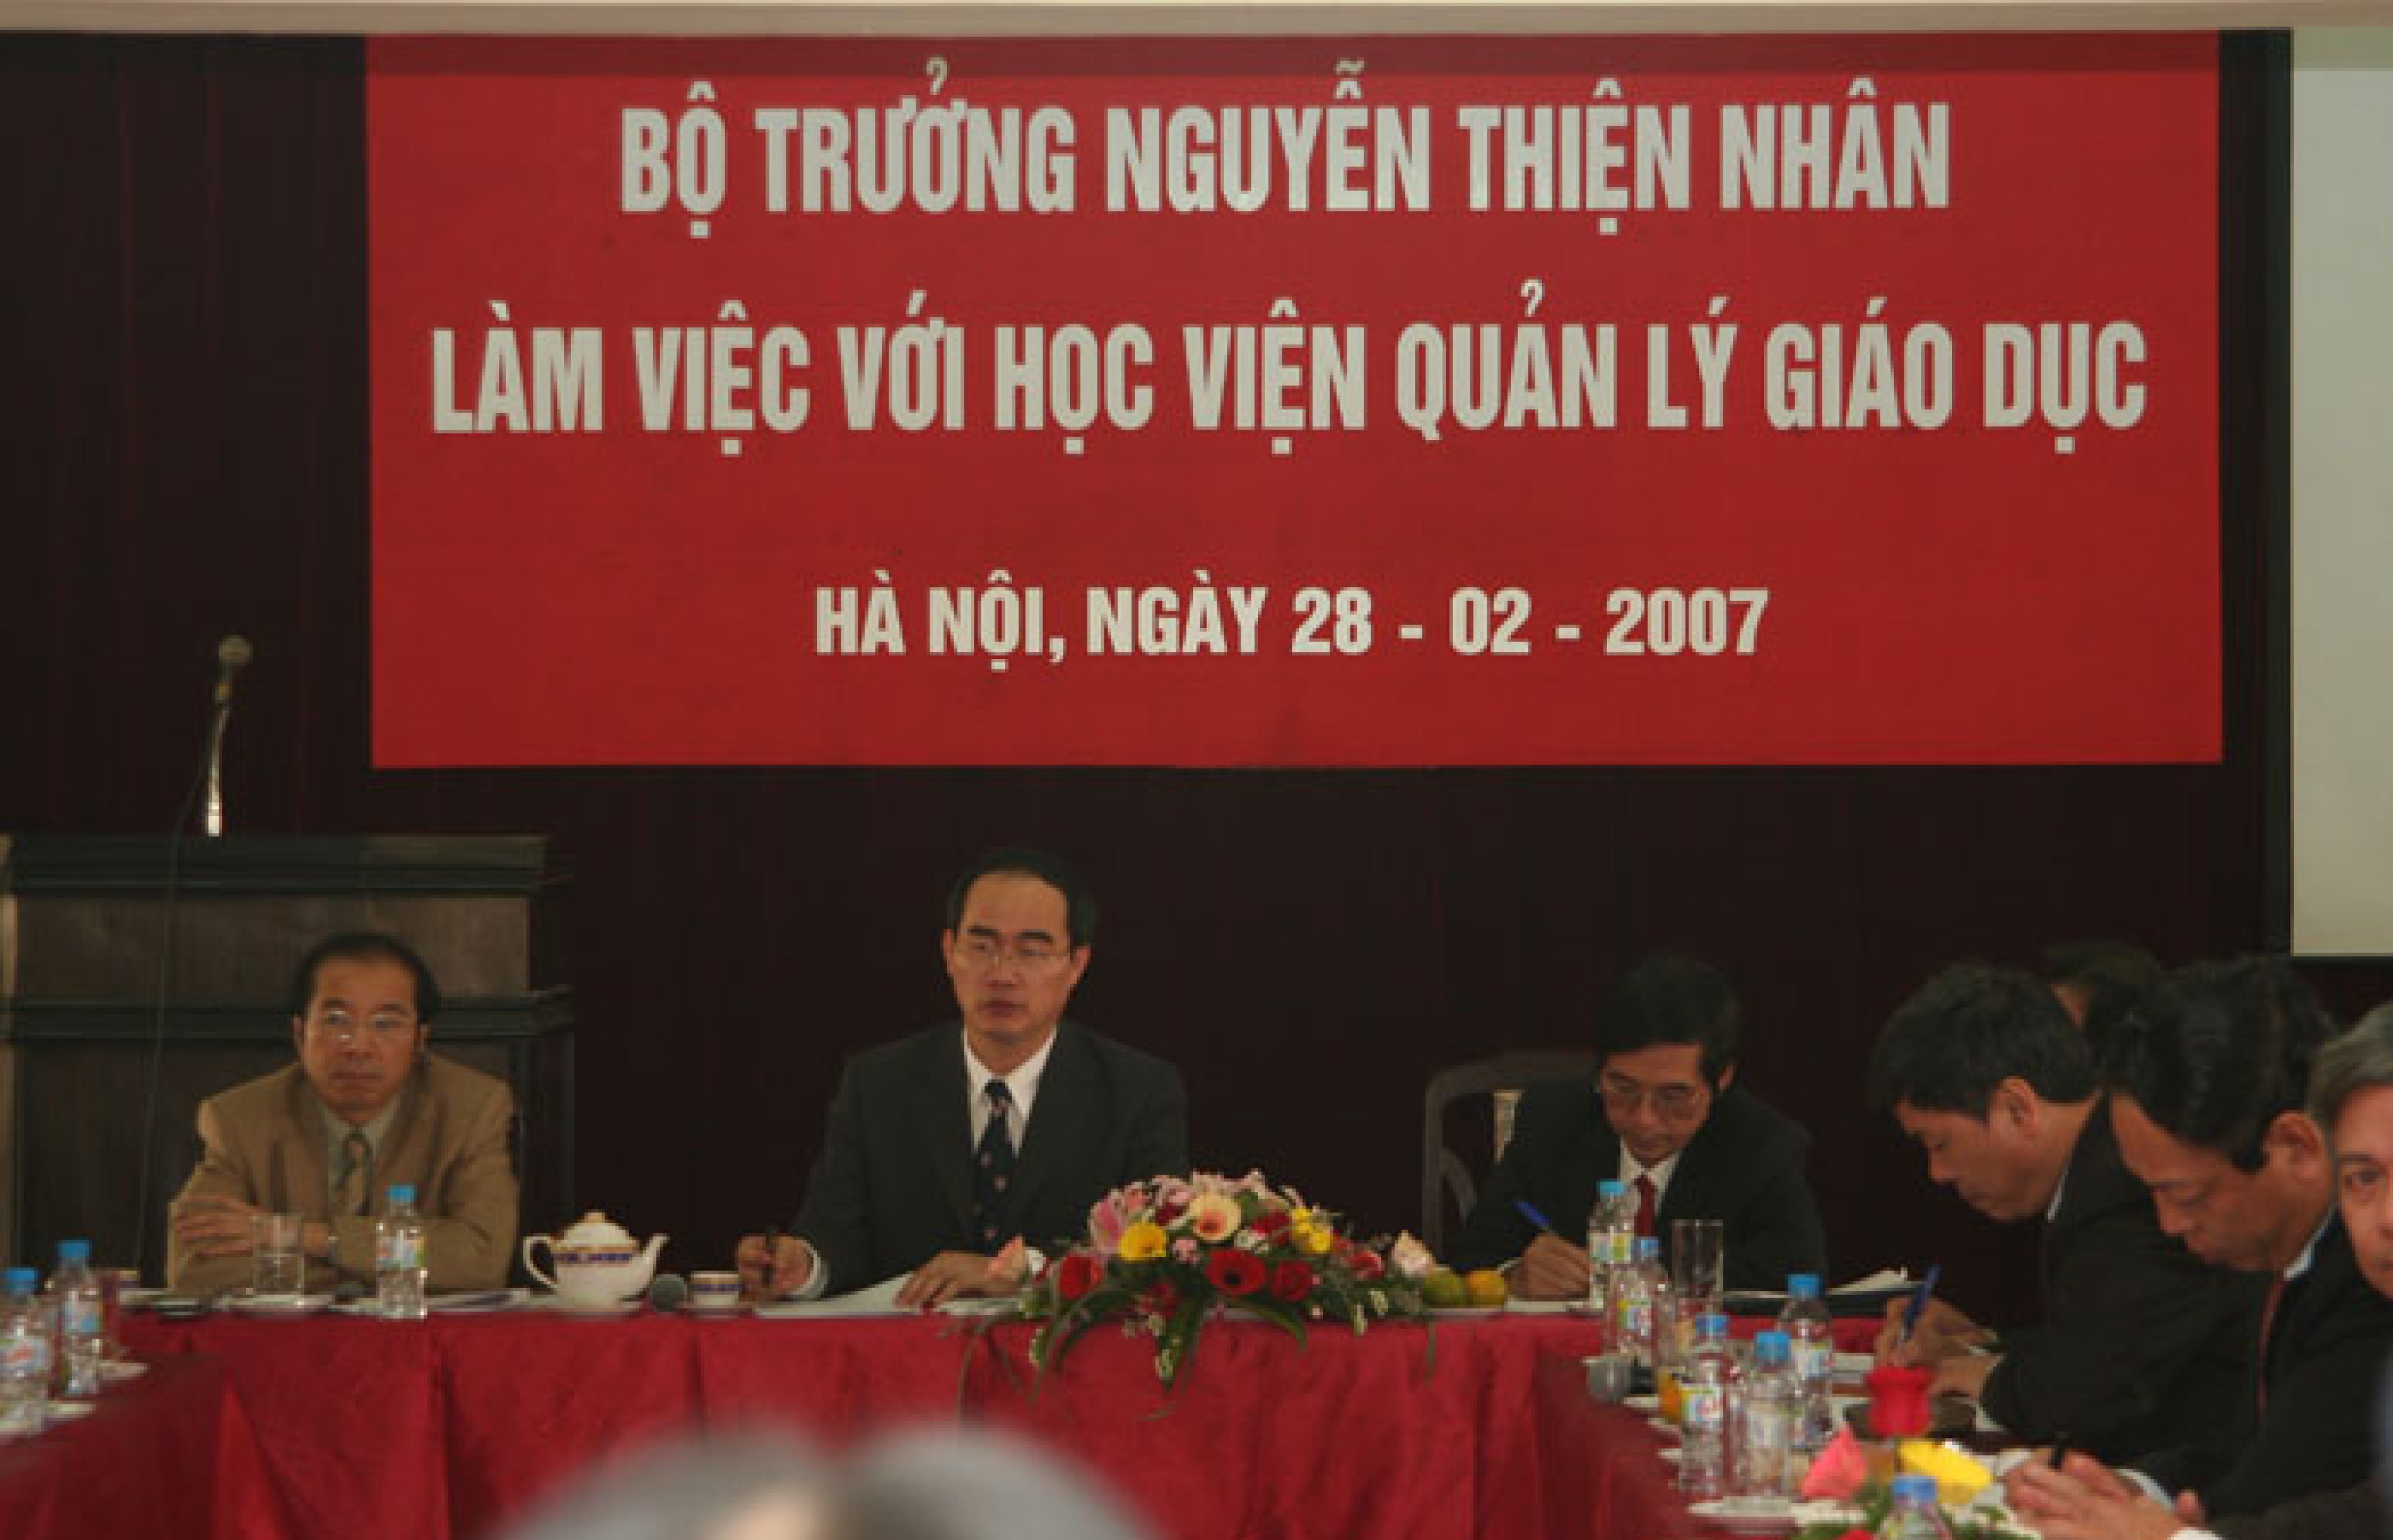 Bộ trưởng Bộ GDĐT Nguyễn Thiện Nhân về thăm và làm việc tại Học viện quản lý giáo dục năm 2007